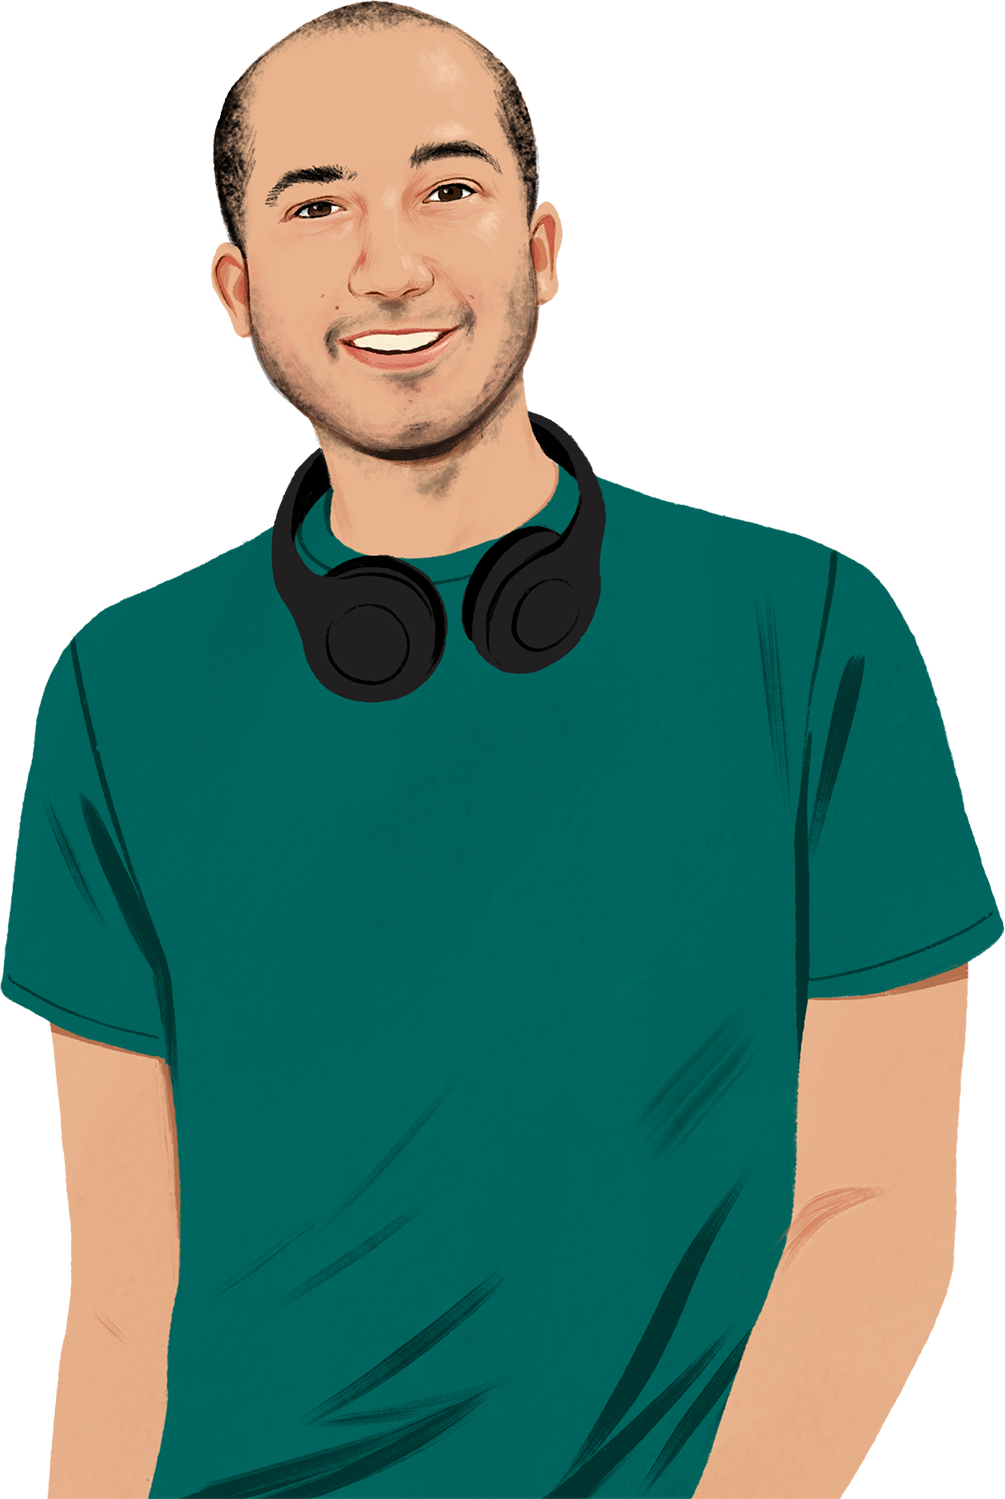 Illustratie van een glimlachende Chris. Hij draagt een koptelefoon om zijn nek en kijkt de lezer aan. Er verschijnt een geïllustreerde iPhone in beeld die zichtbare geluidsgolven uitstraalt.